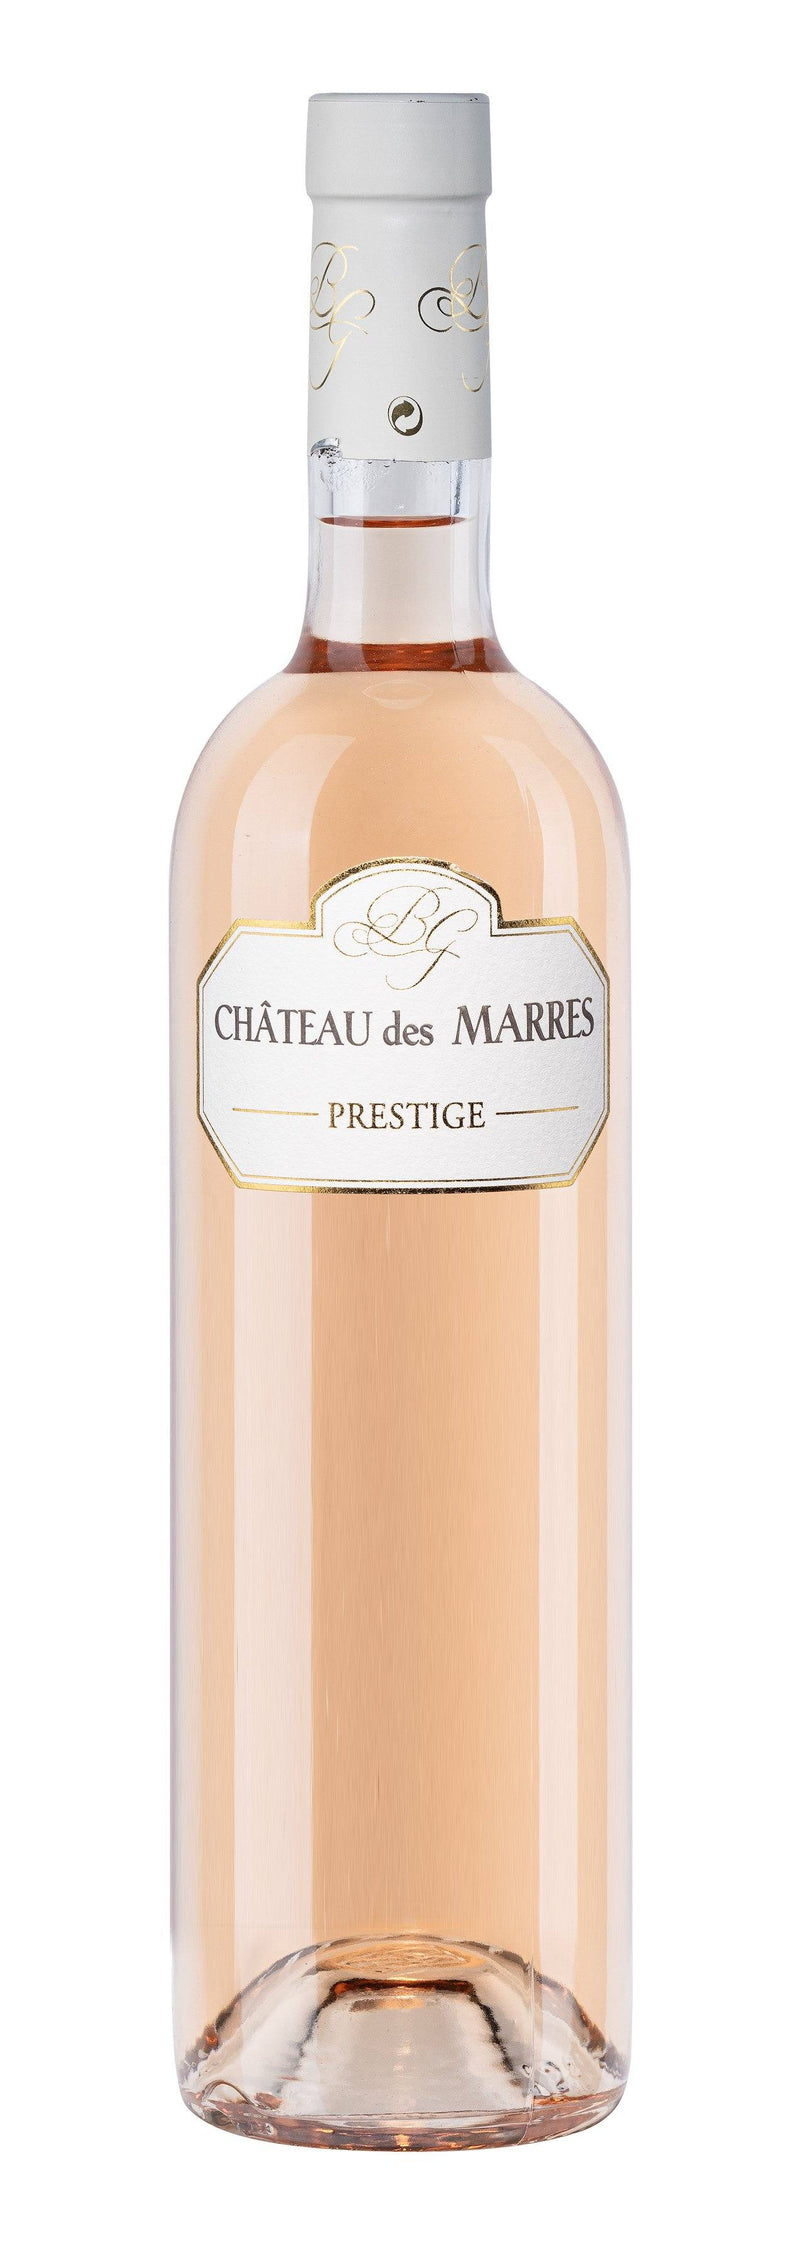 Château des Marres - Cuvée Prestige vinesandterroirs 